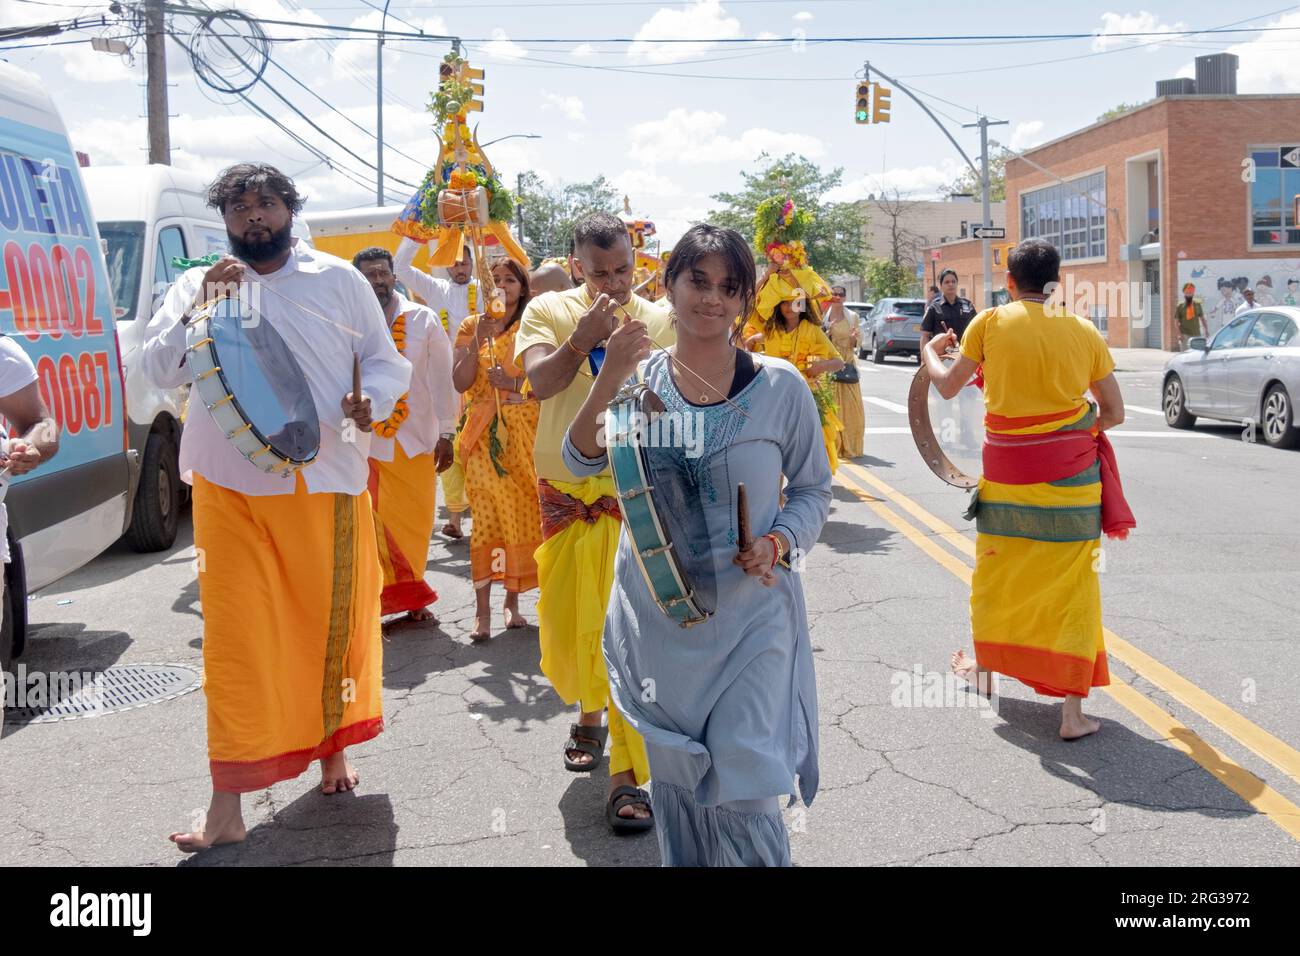 Devout Hindus march, viele barfuß, von ihrem Tempel bis zum Ort ihres Spaziergangs auf heißen Kohlen, auf der 101 Ave in Ozone Park Queens. Stockfoto